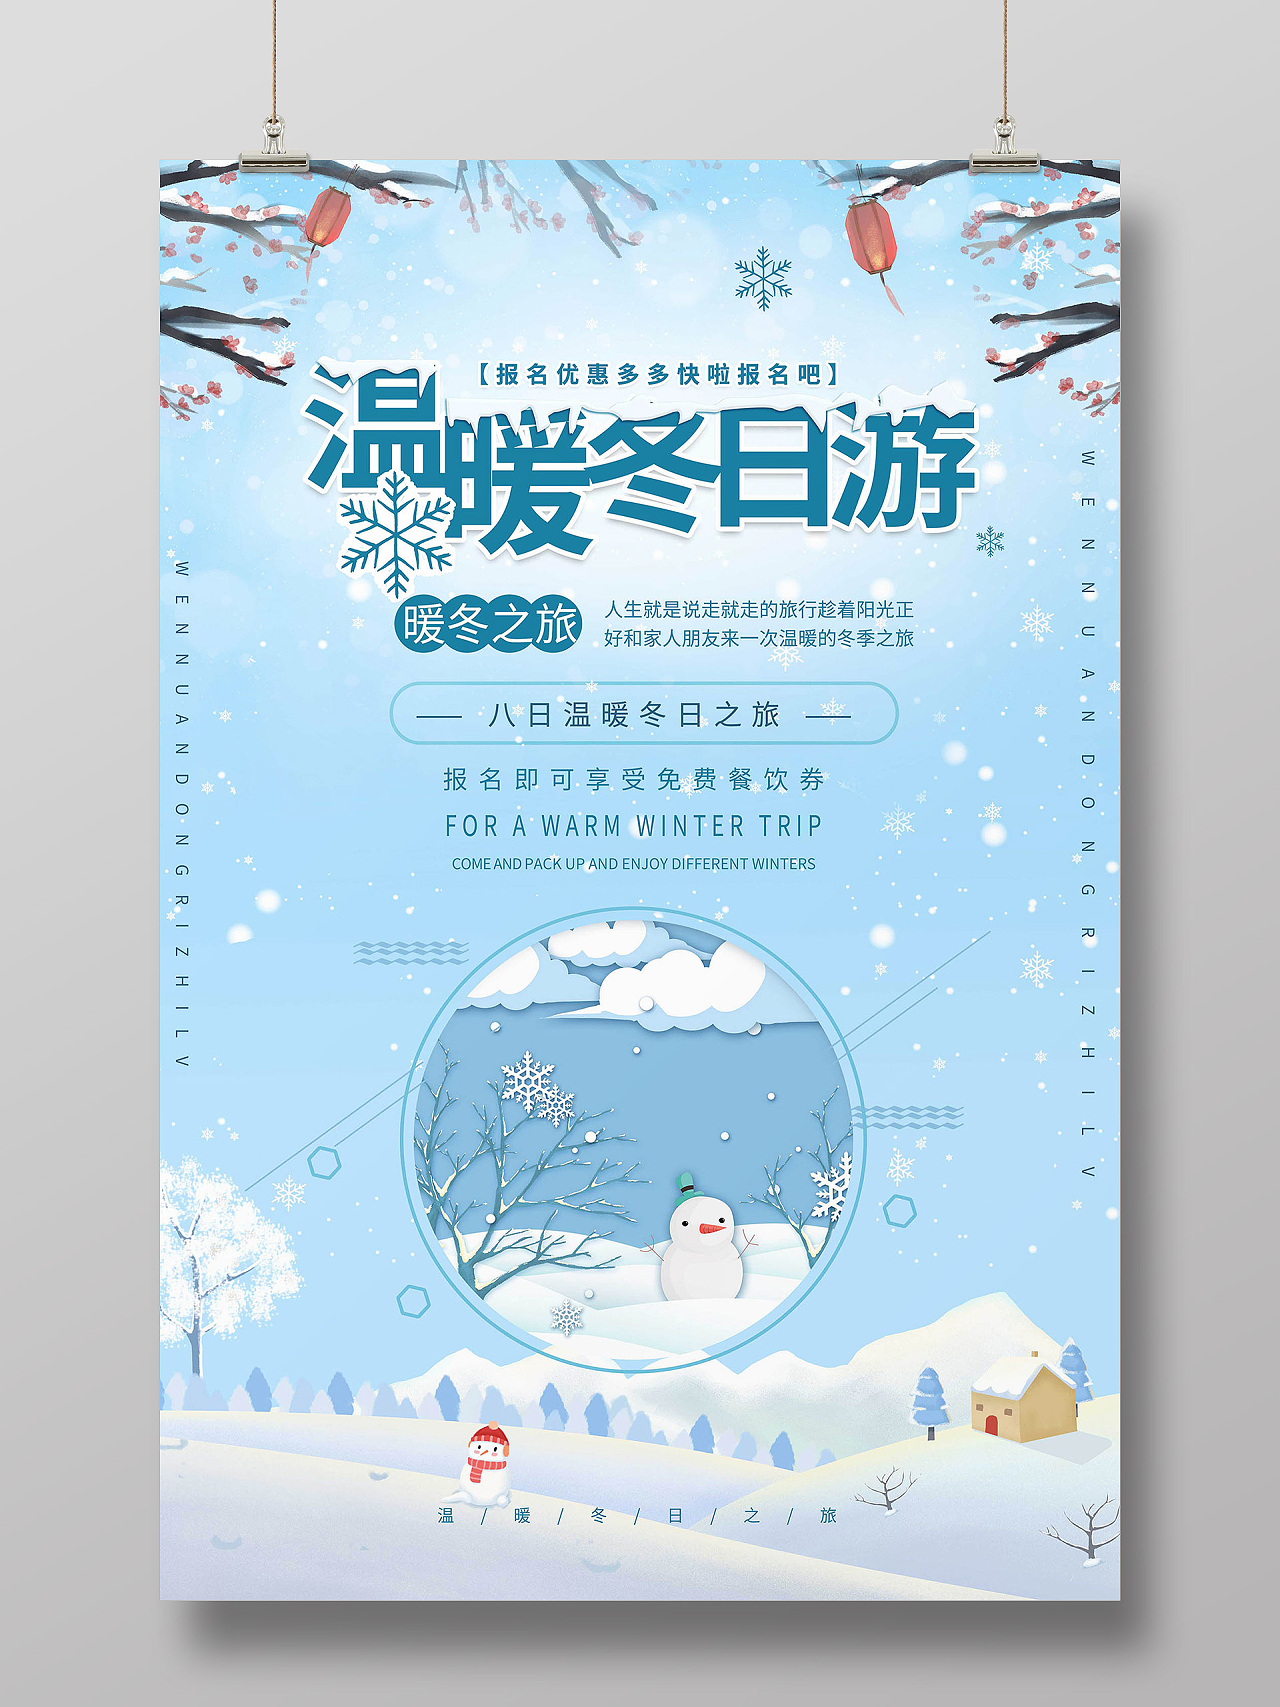 浅蓝色背景创意卡通风格温暖冬日游海报设计冬天旅游